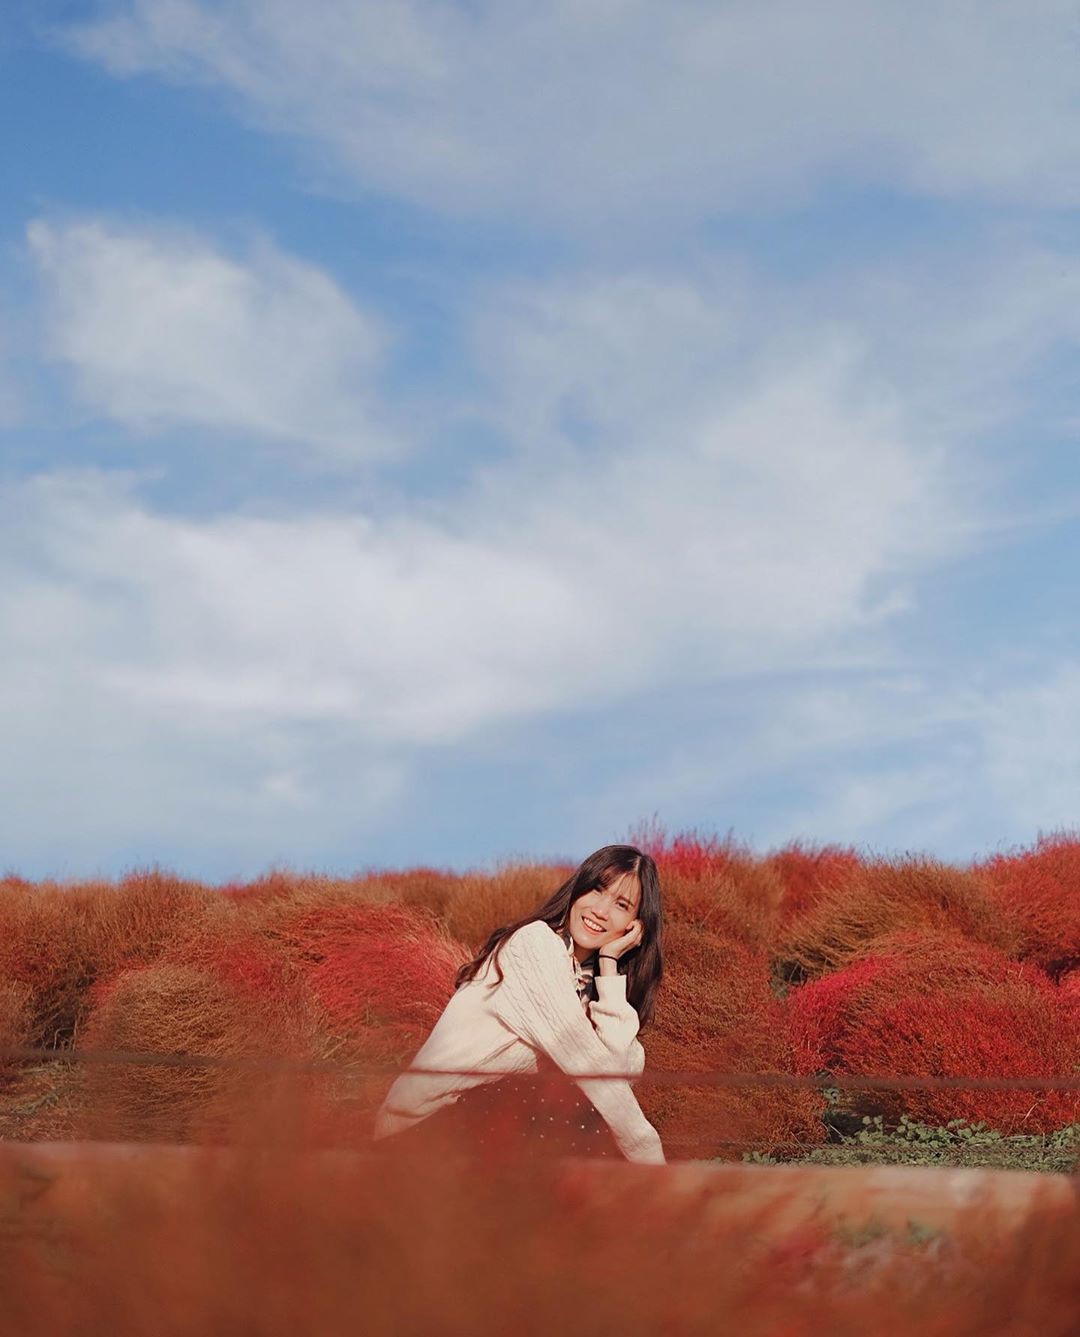 Đẹp nhất Nhật Bản mùa này chính là đồi cỏ Kochia đỏ rực, du khách đua nhau check-in đông không thấy lối đi - Ảnh 16.